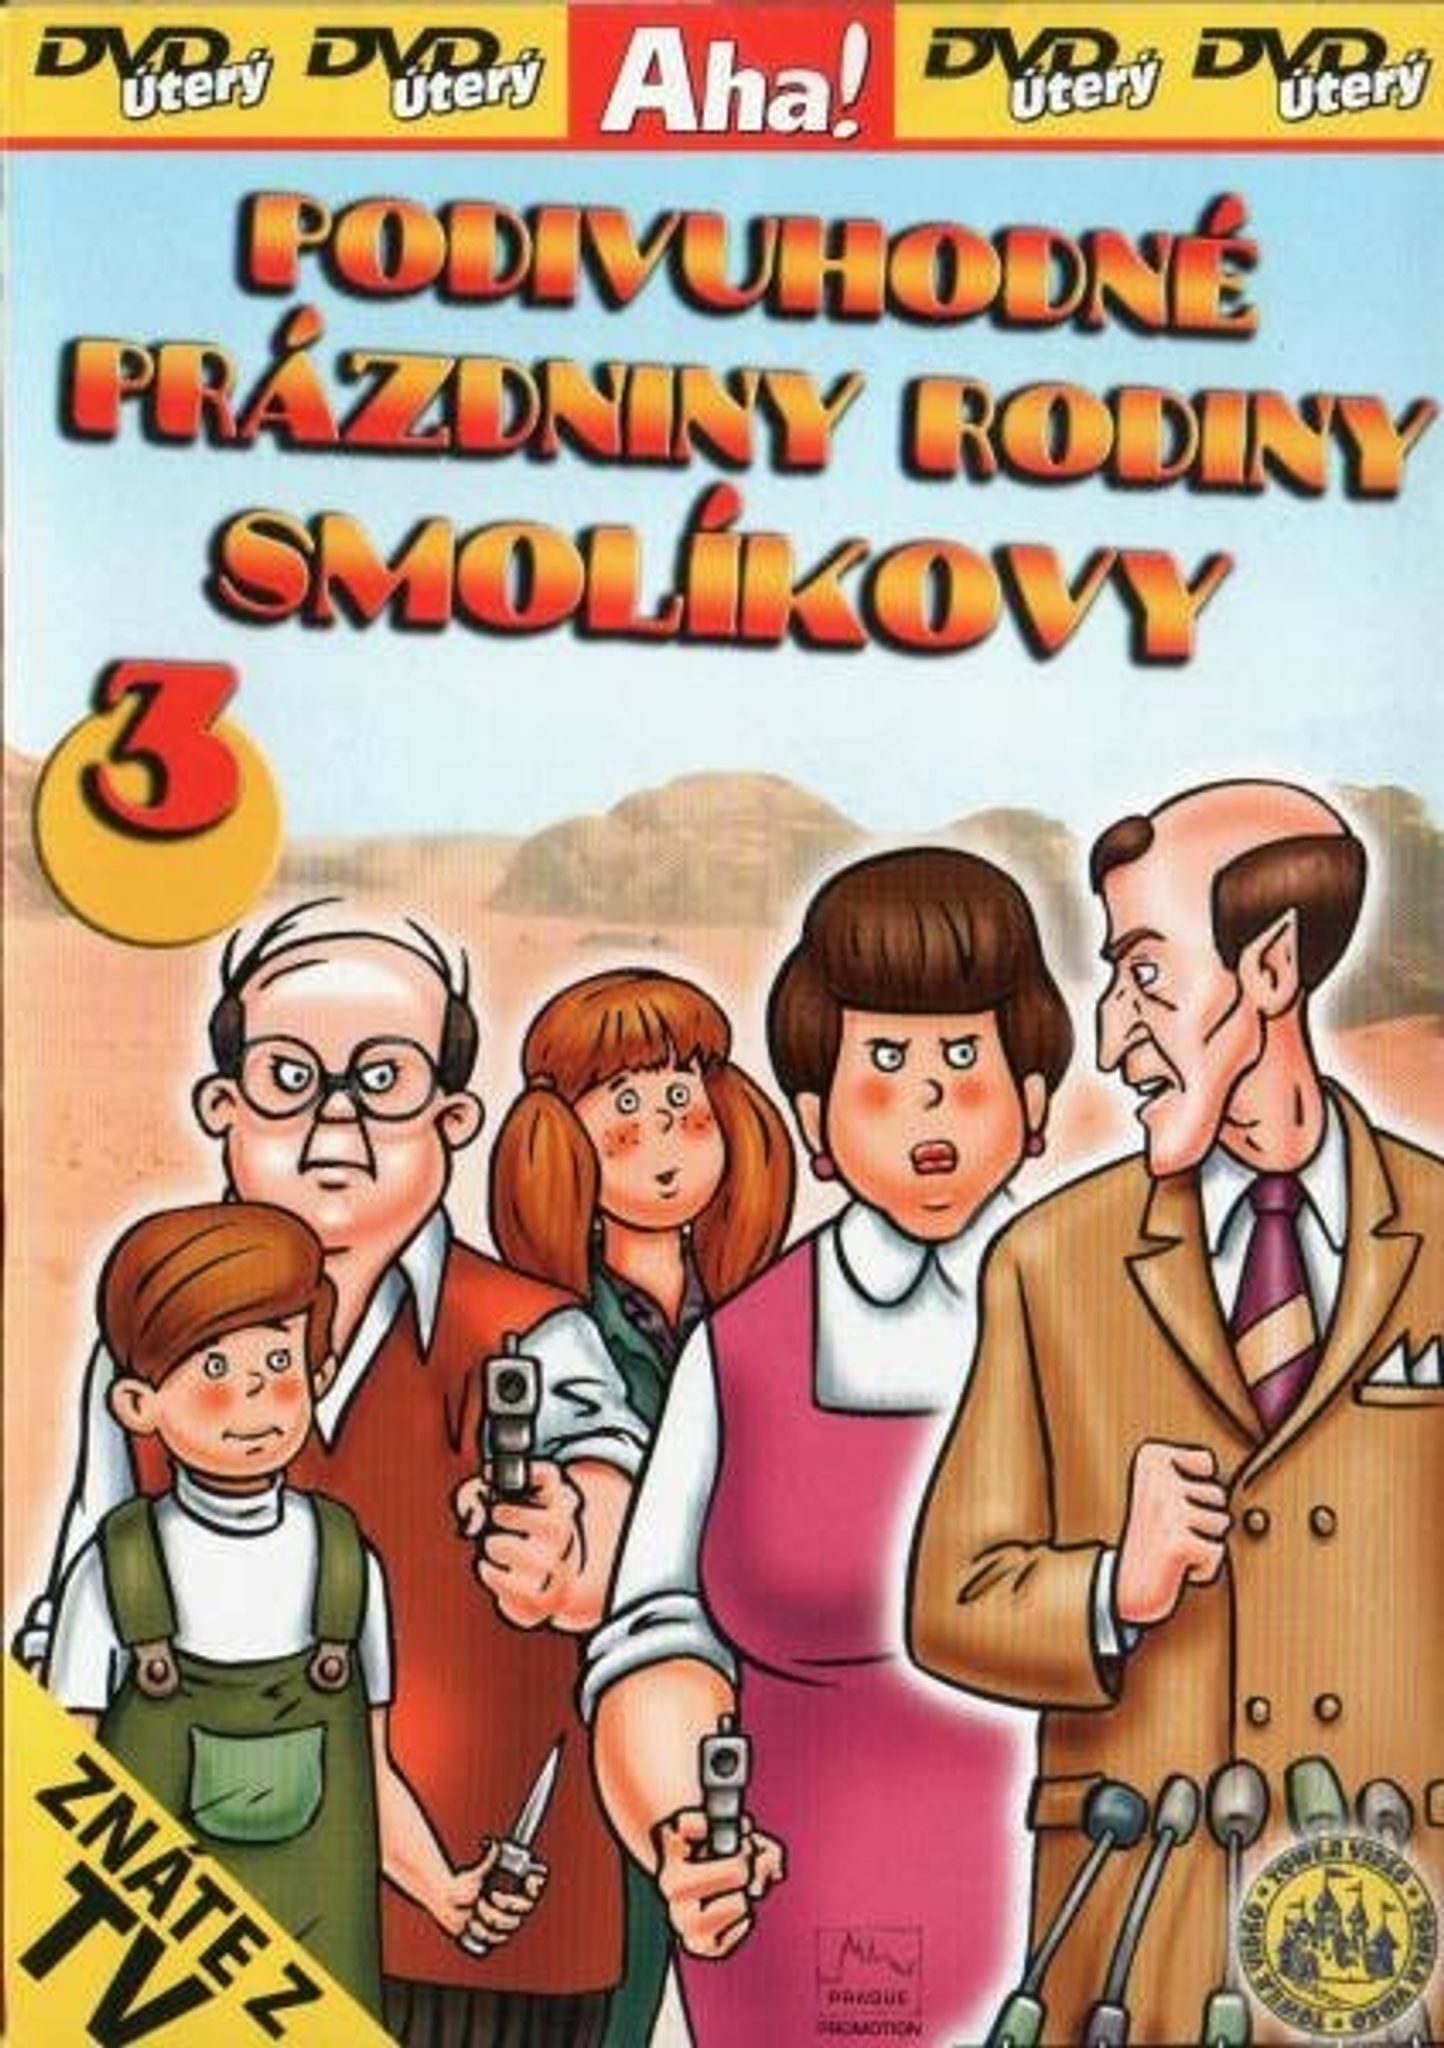 DVD Podivuhodn przdniny rodiny Smolkovy 3